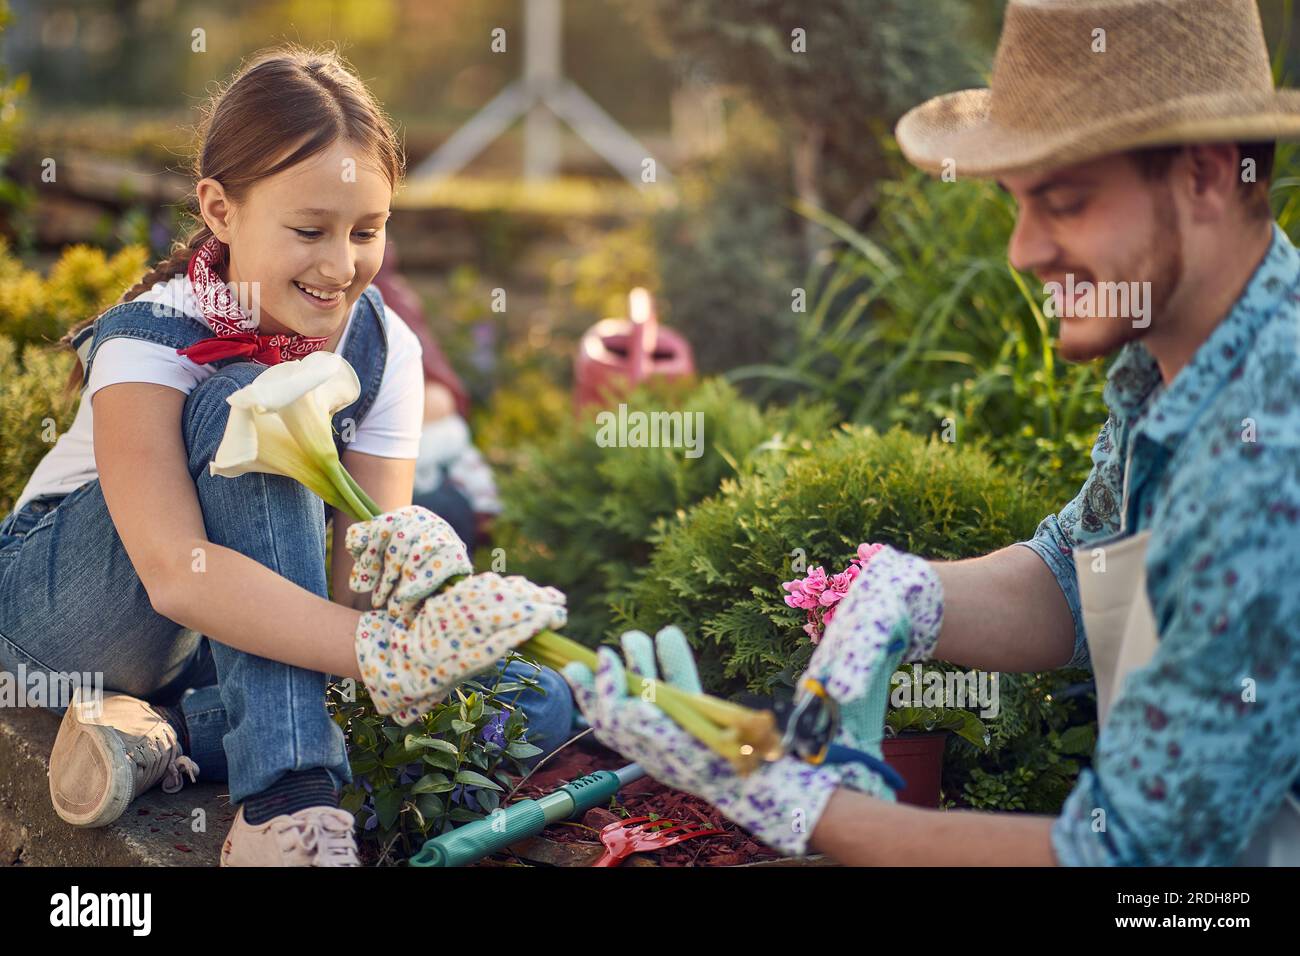 Vater und seine Tochter sind sorgfältig beschnittene Blumen. Freude und Gelassenheit dieser gemeinsamen Gartenerfahrung, die ein Gefühl der Verbindung mit der Natur fördert Stockfoto